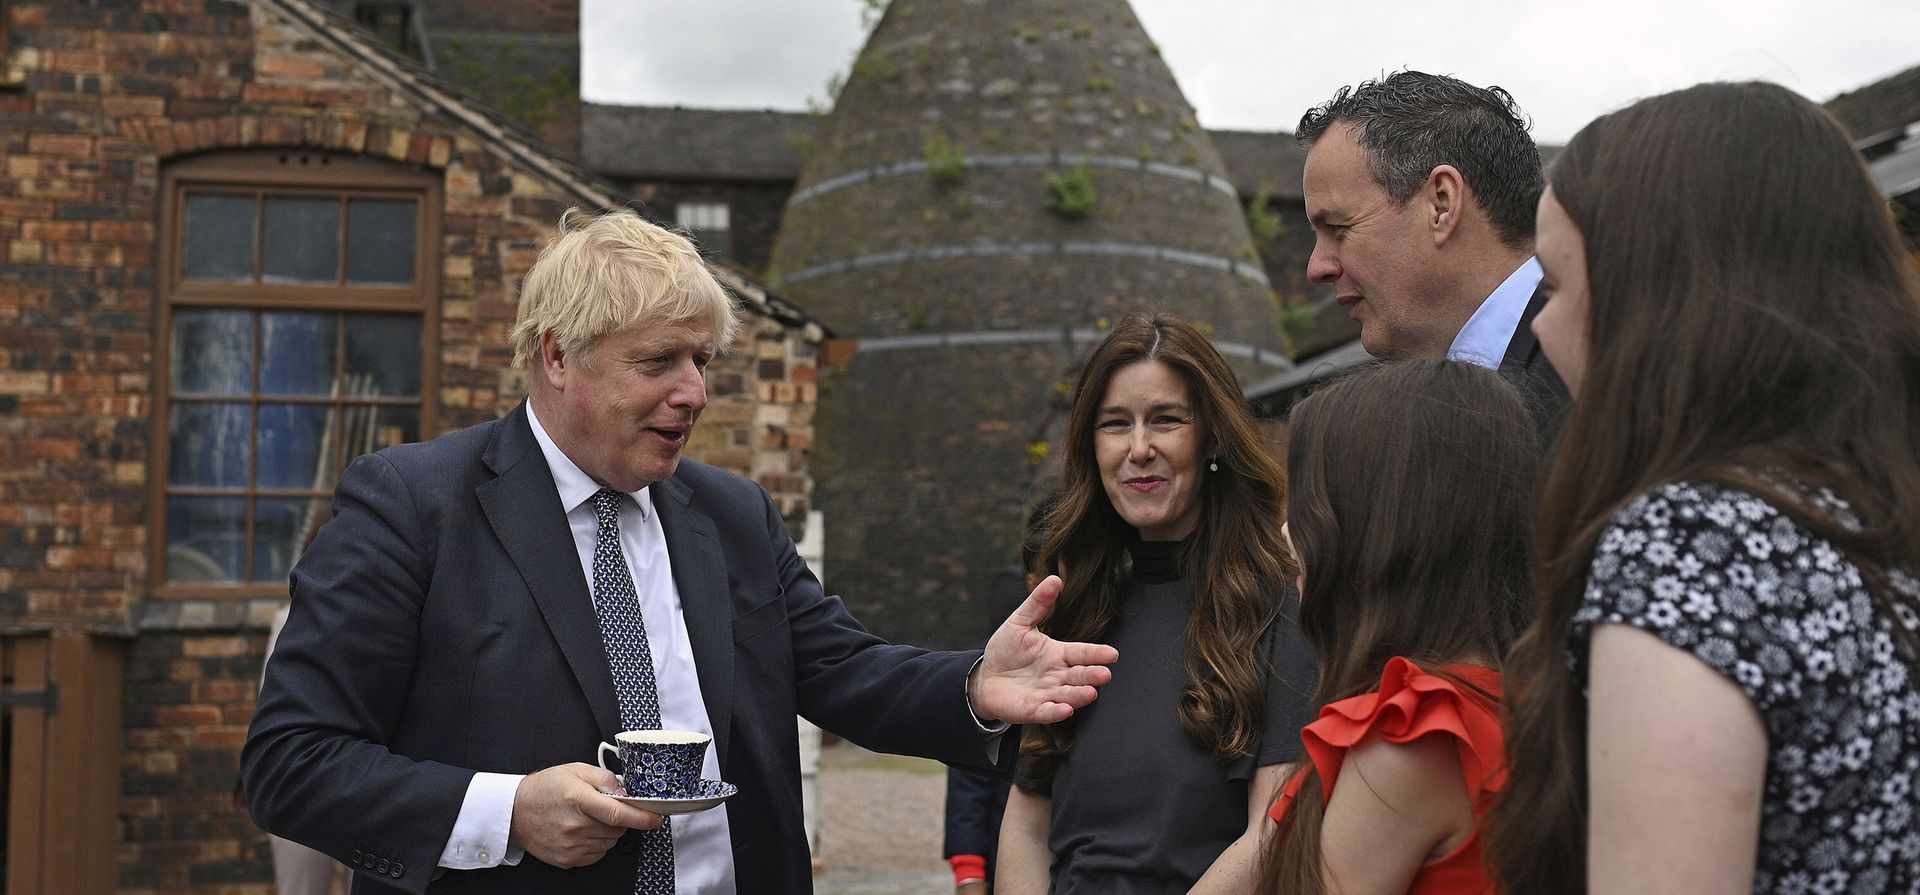 El primer ministro Boris Johnson, comparte una charla con los empresarios locales después de una reunión de gabinete en una fábrica de cerámica en Stoke-on-Trent, Inglaterra, el jueves 12 de mayo de 2022.